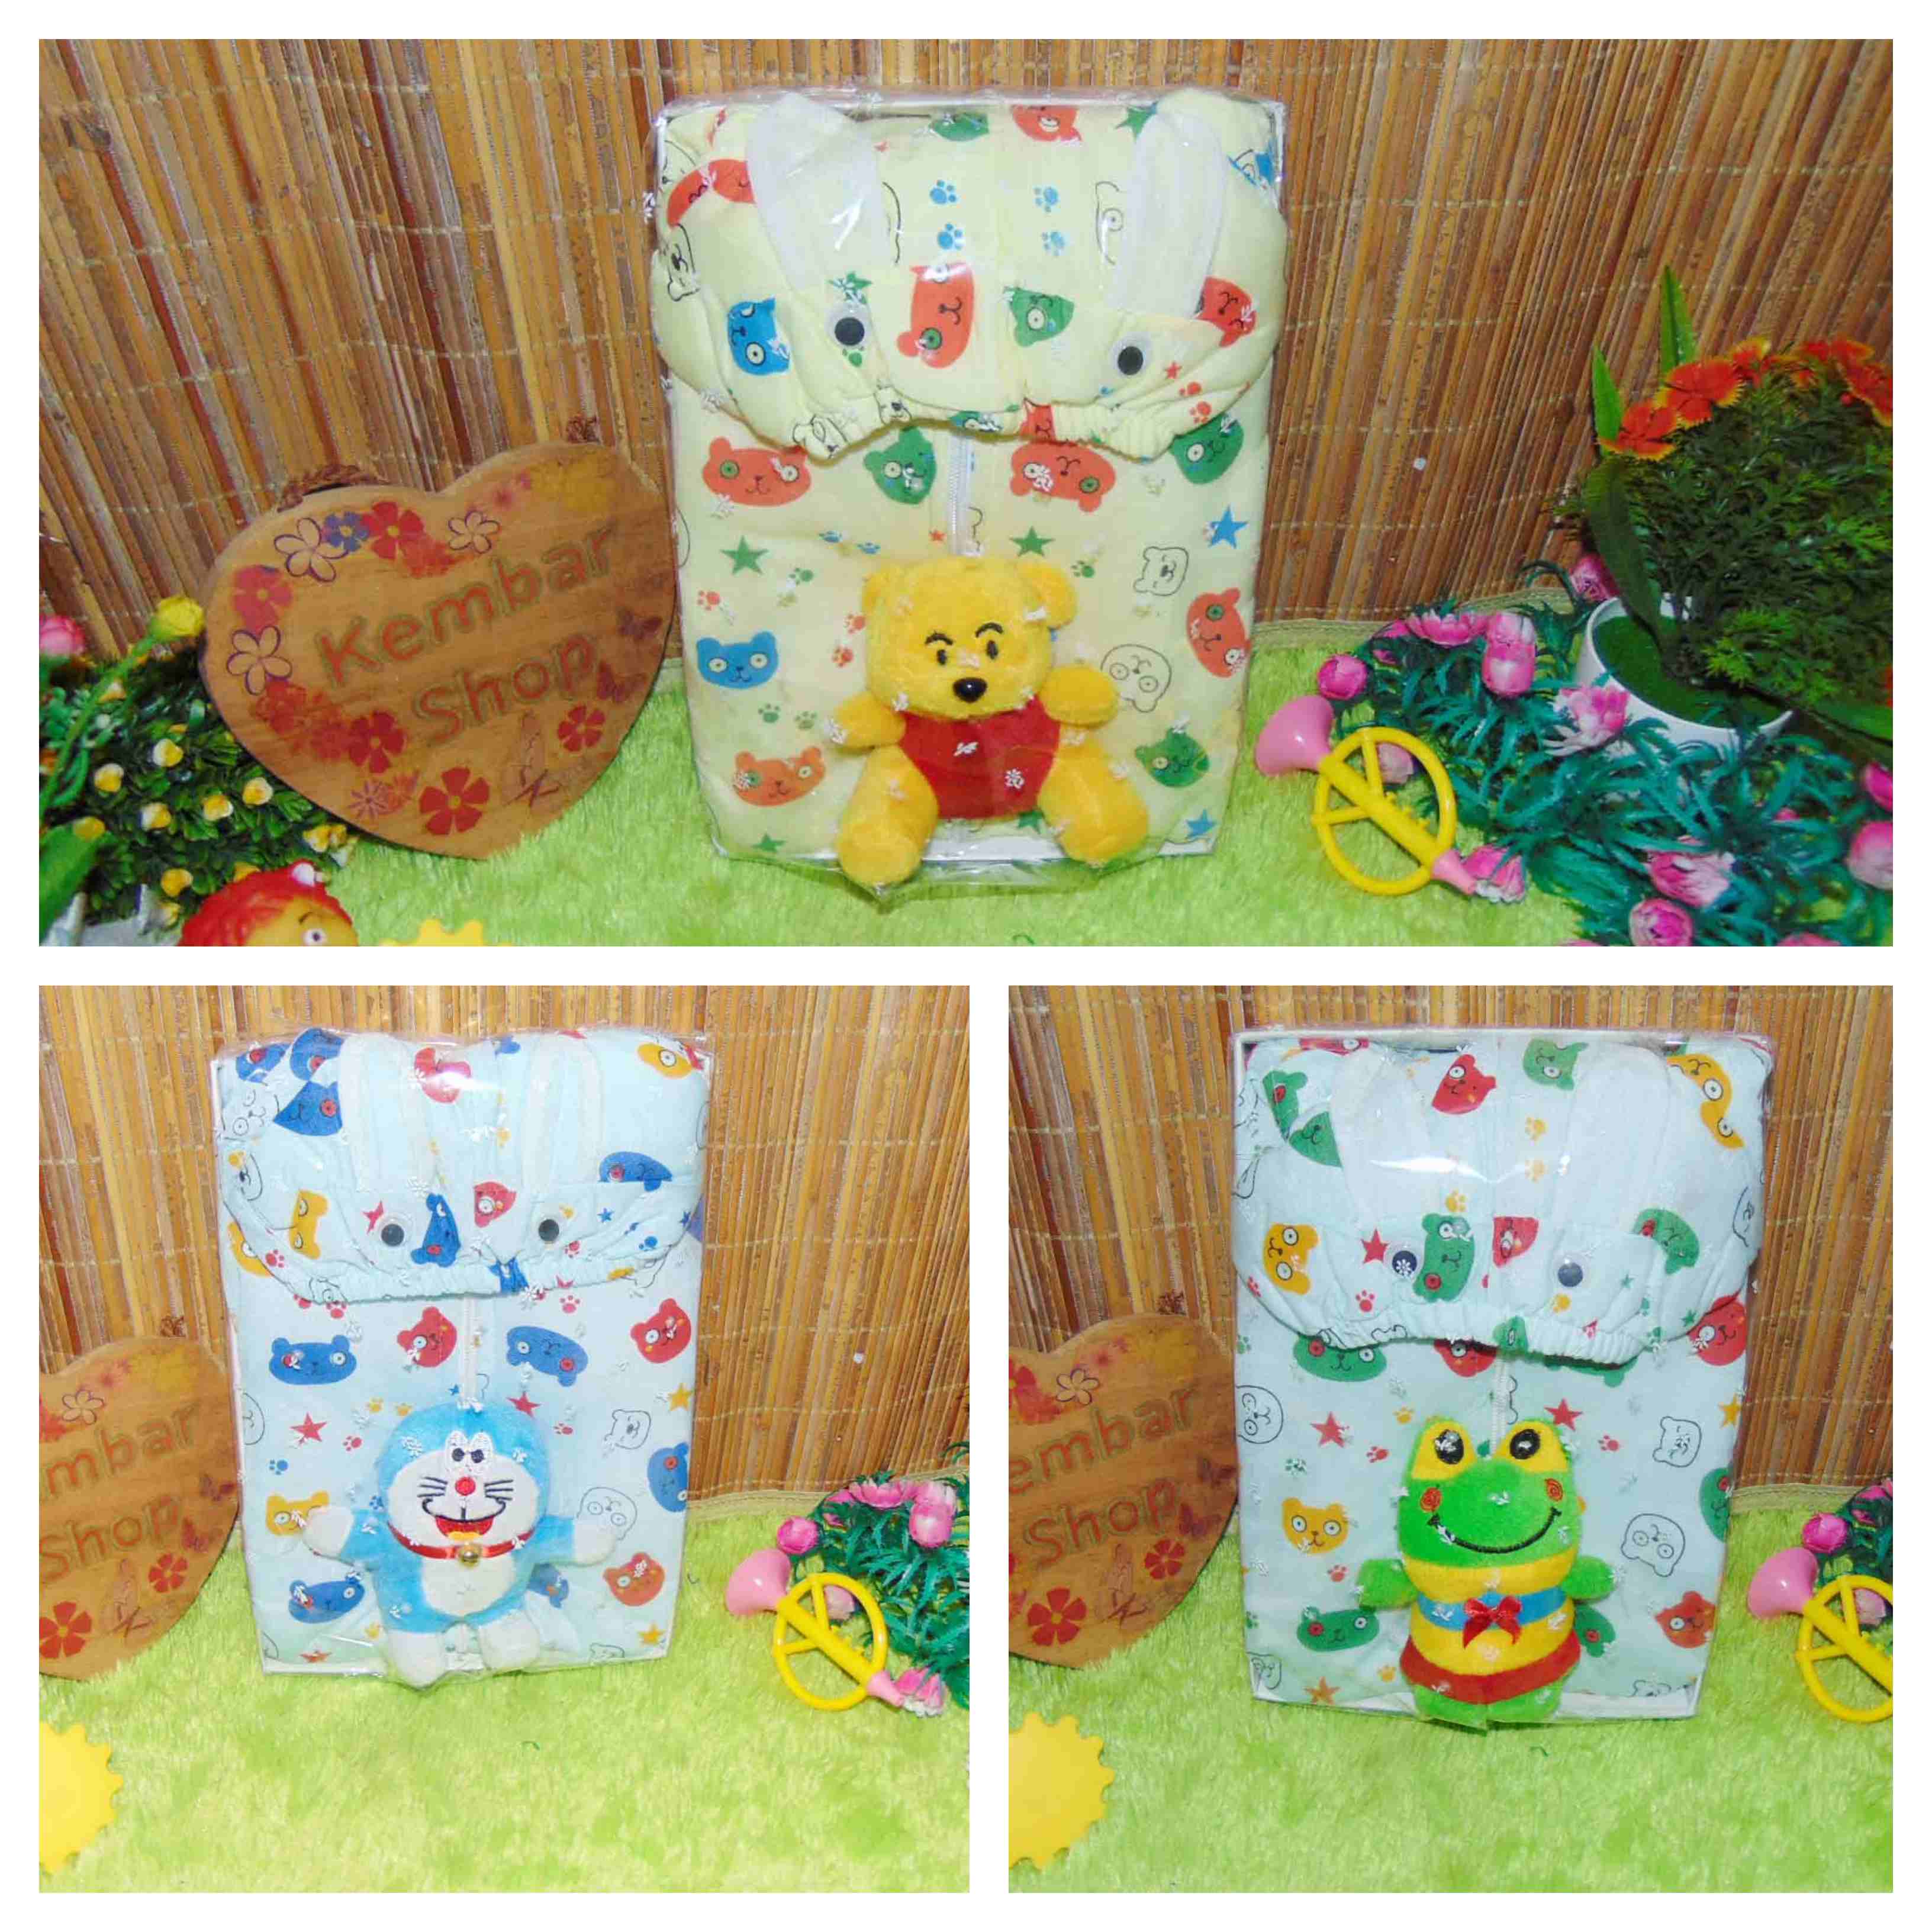 FREE KARTU UCAPAN paket kado lahiran bayi baby gift set box jaket plus boneka motif Baby Bear Beruang Aneka warna (3)